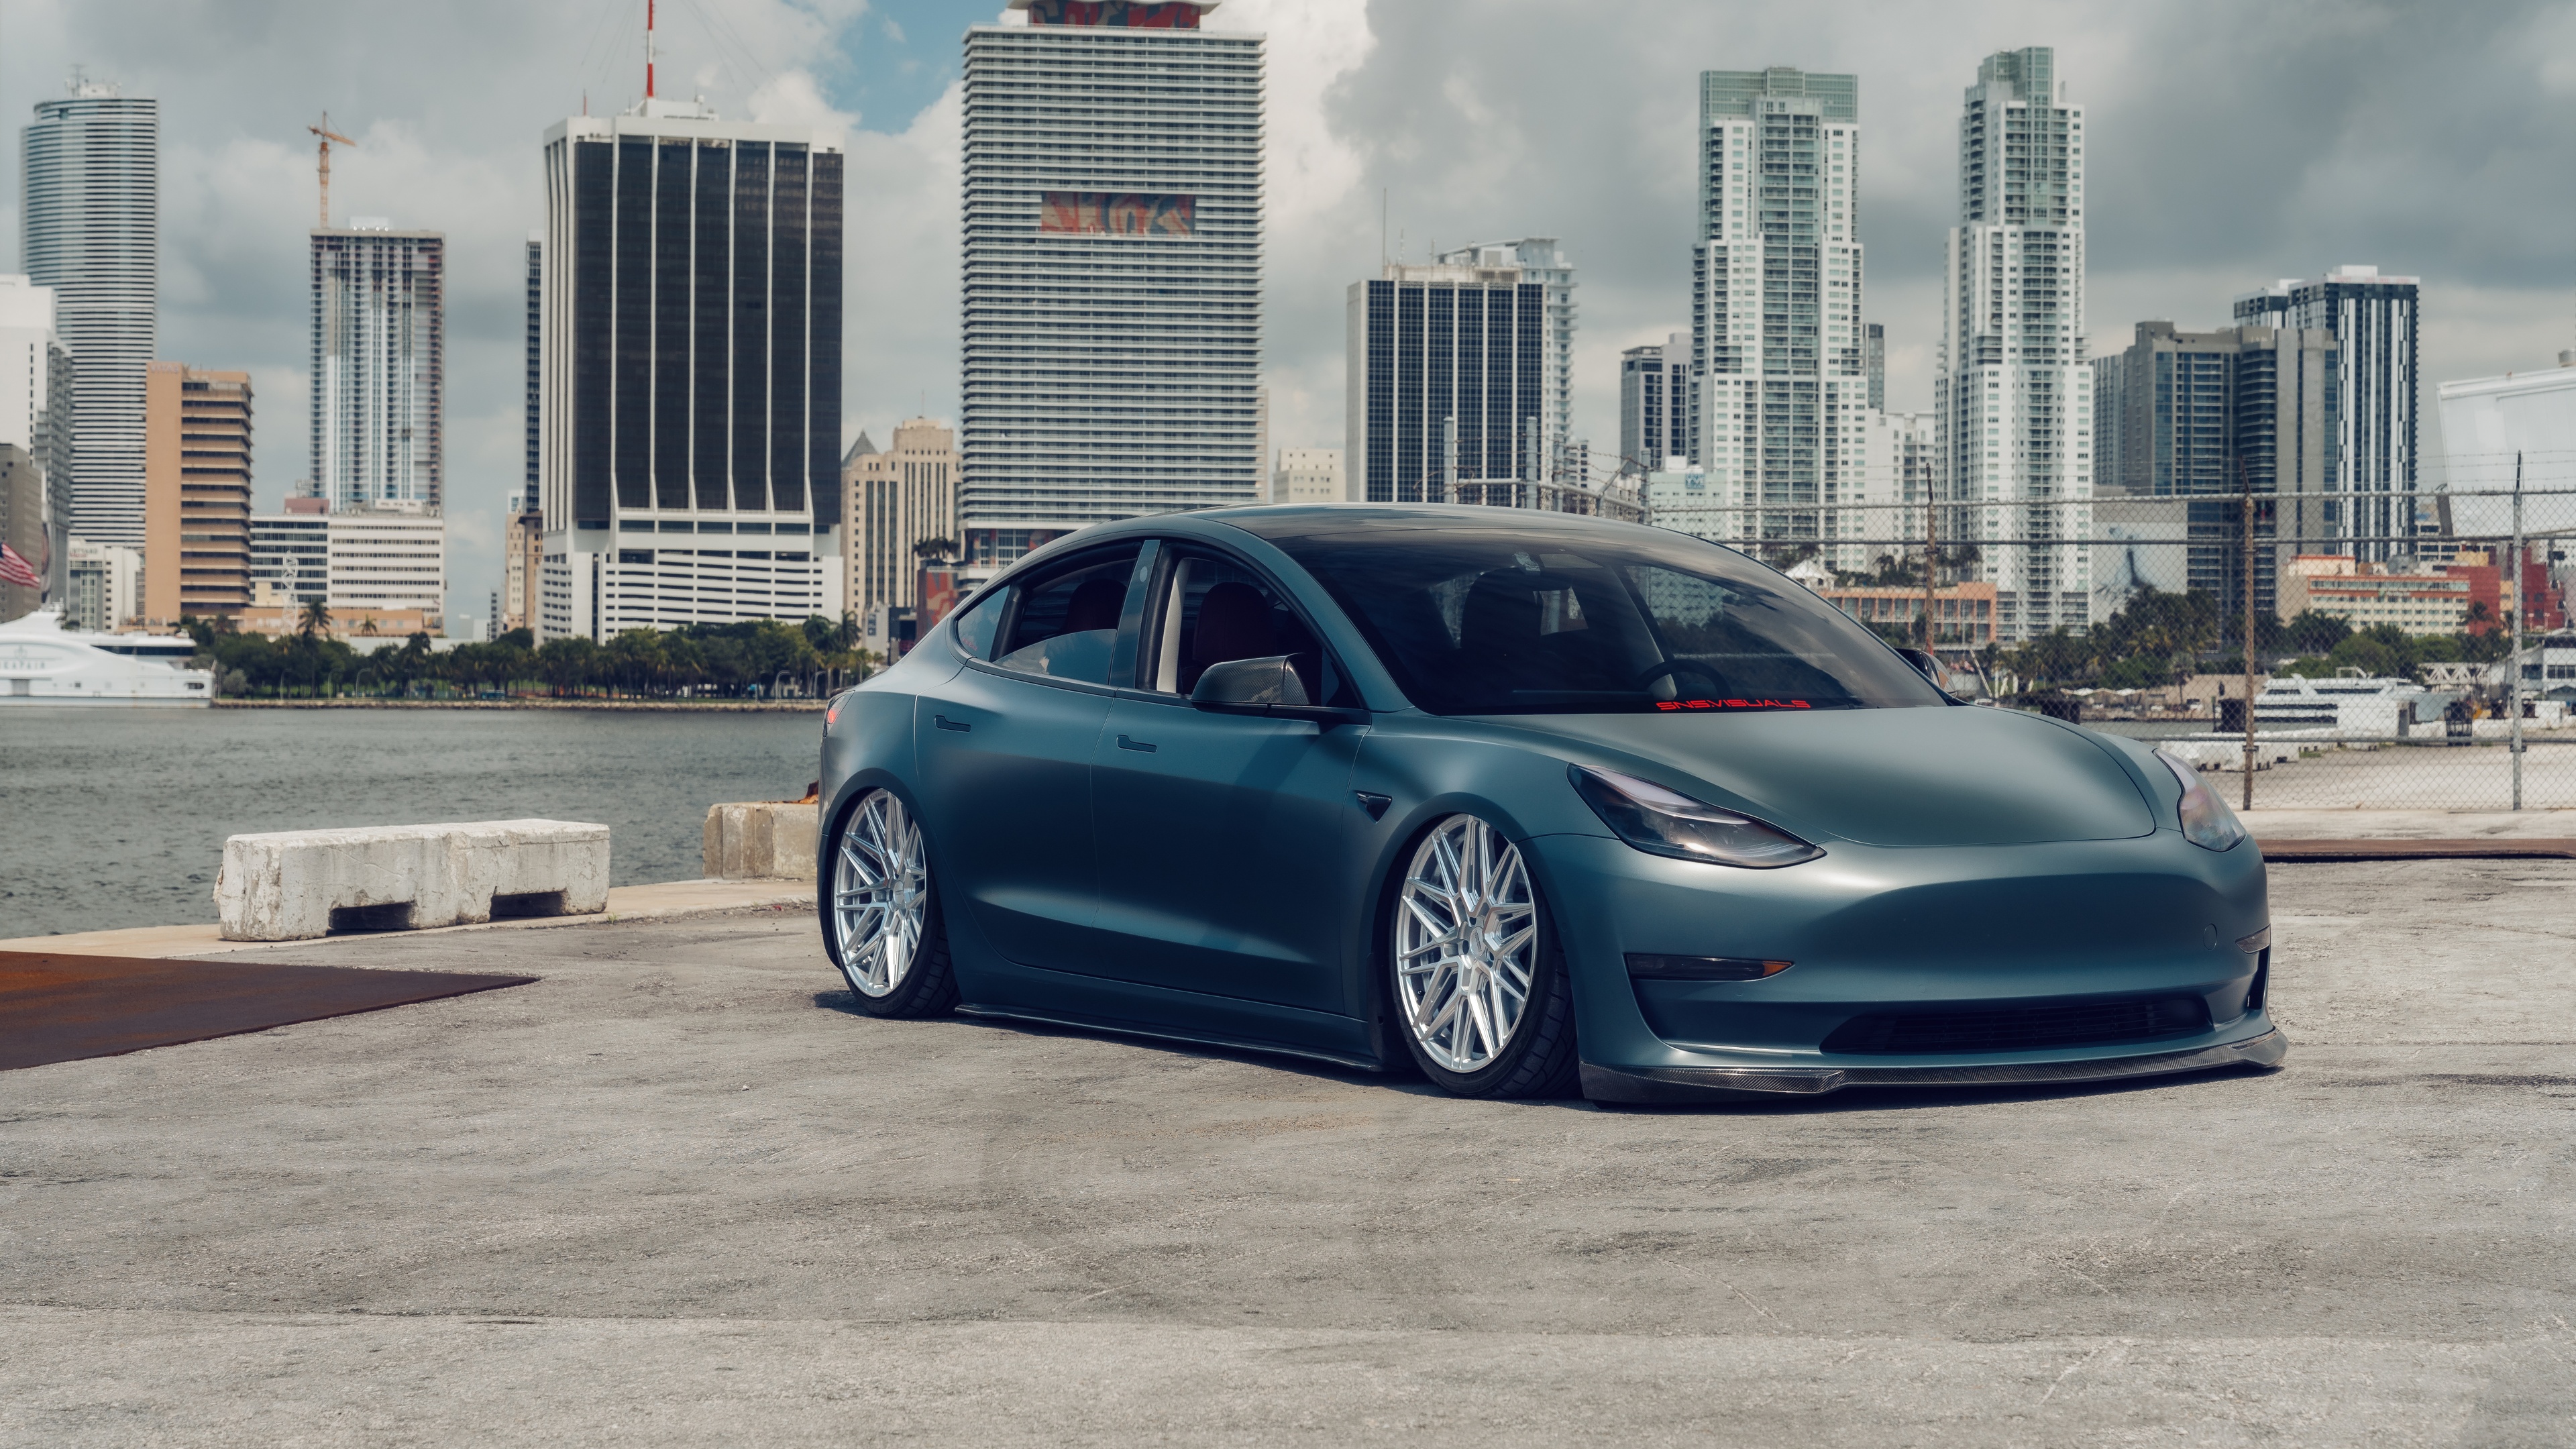 Tesla Model 3 Wallpaper 4K, Electric cars, 5K, 8K, Cars, #8293